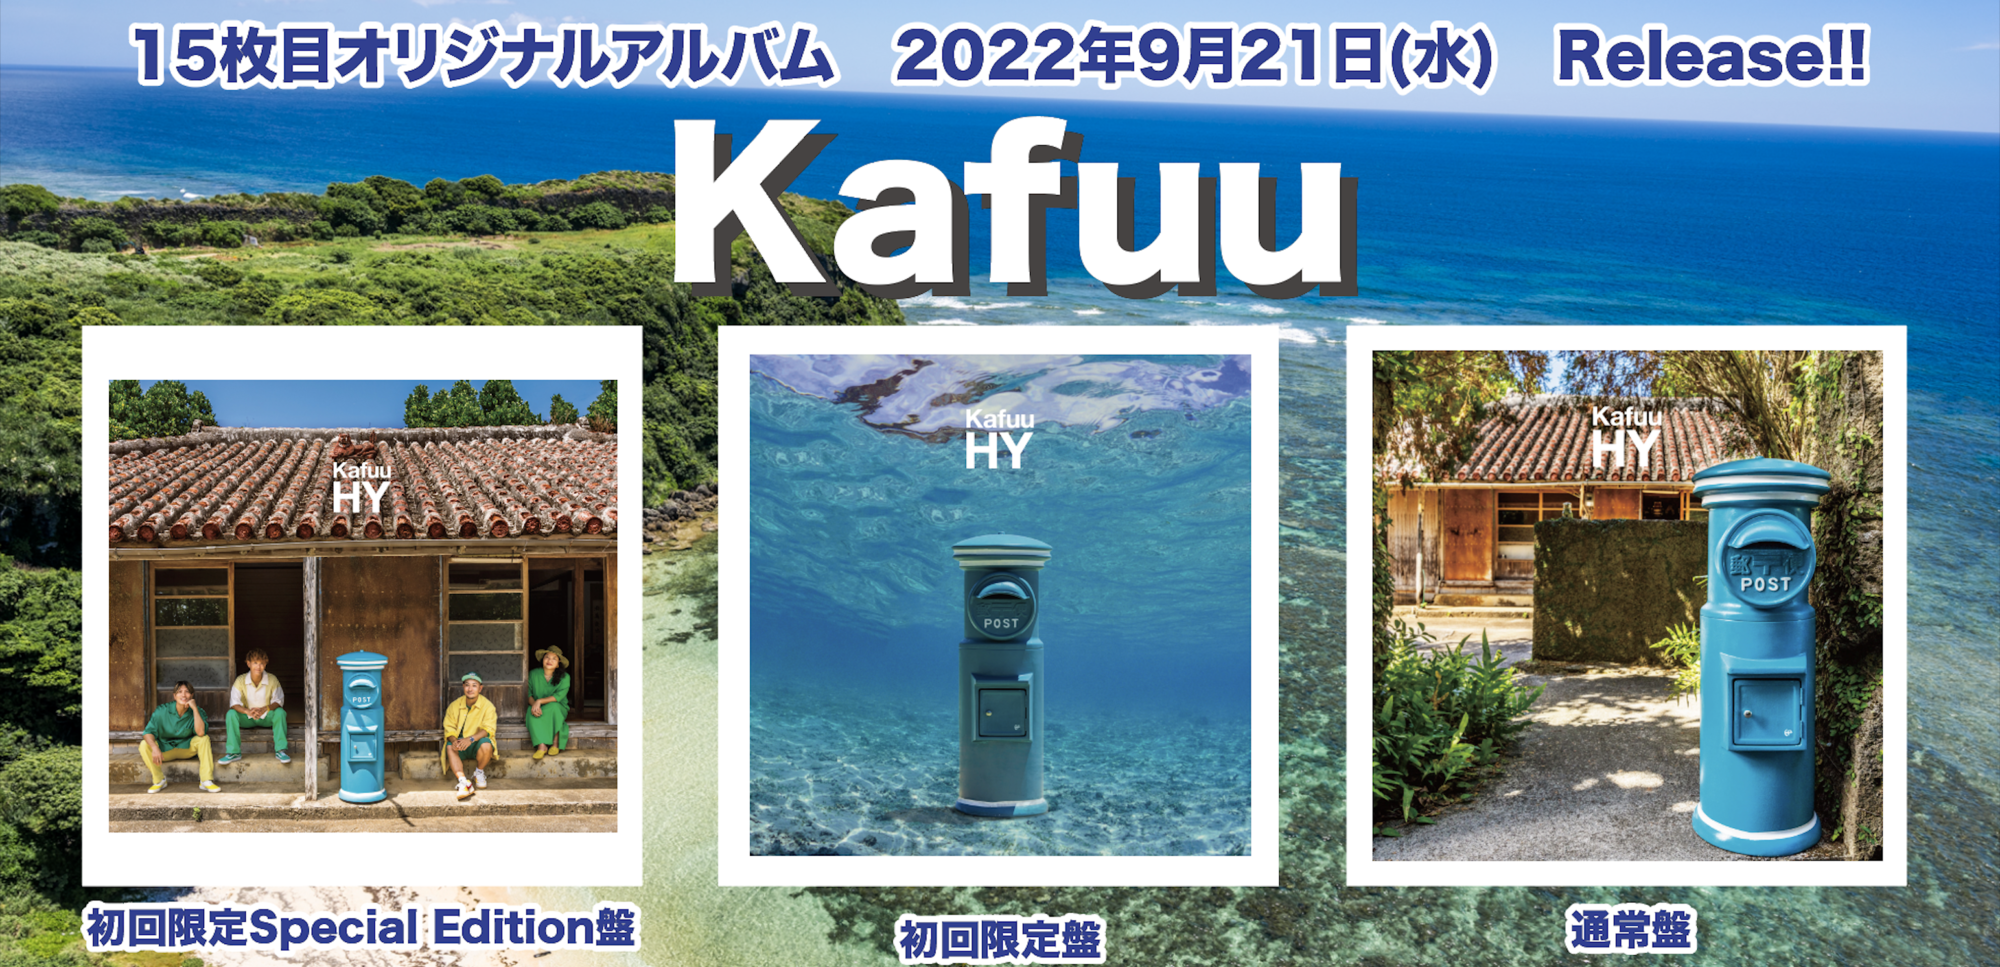 15th ALBUM「Kafuu」2022年9月21日(水) リリース！アートワーク解禁 